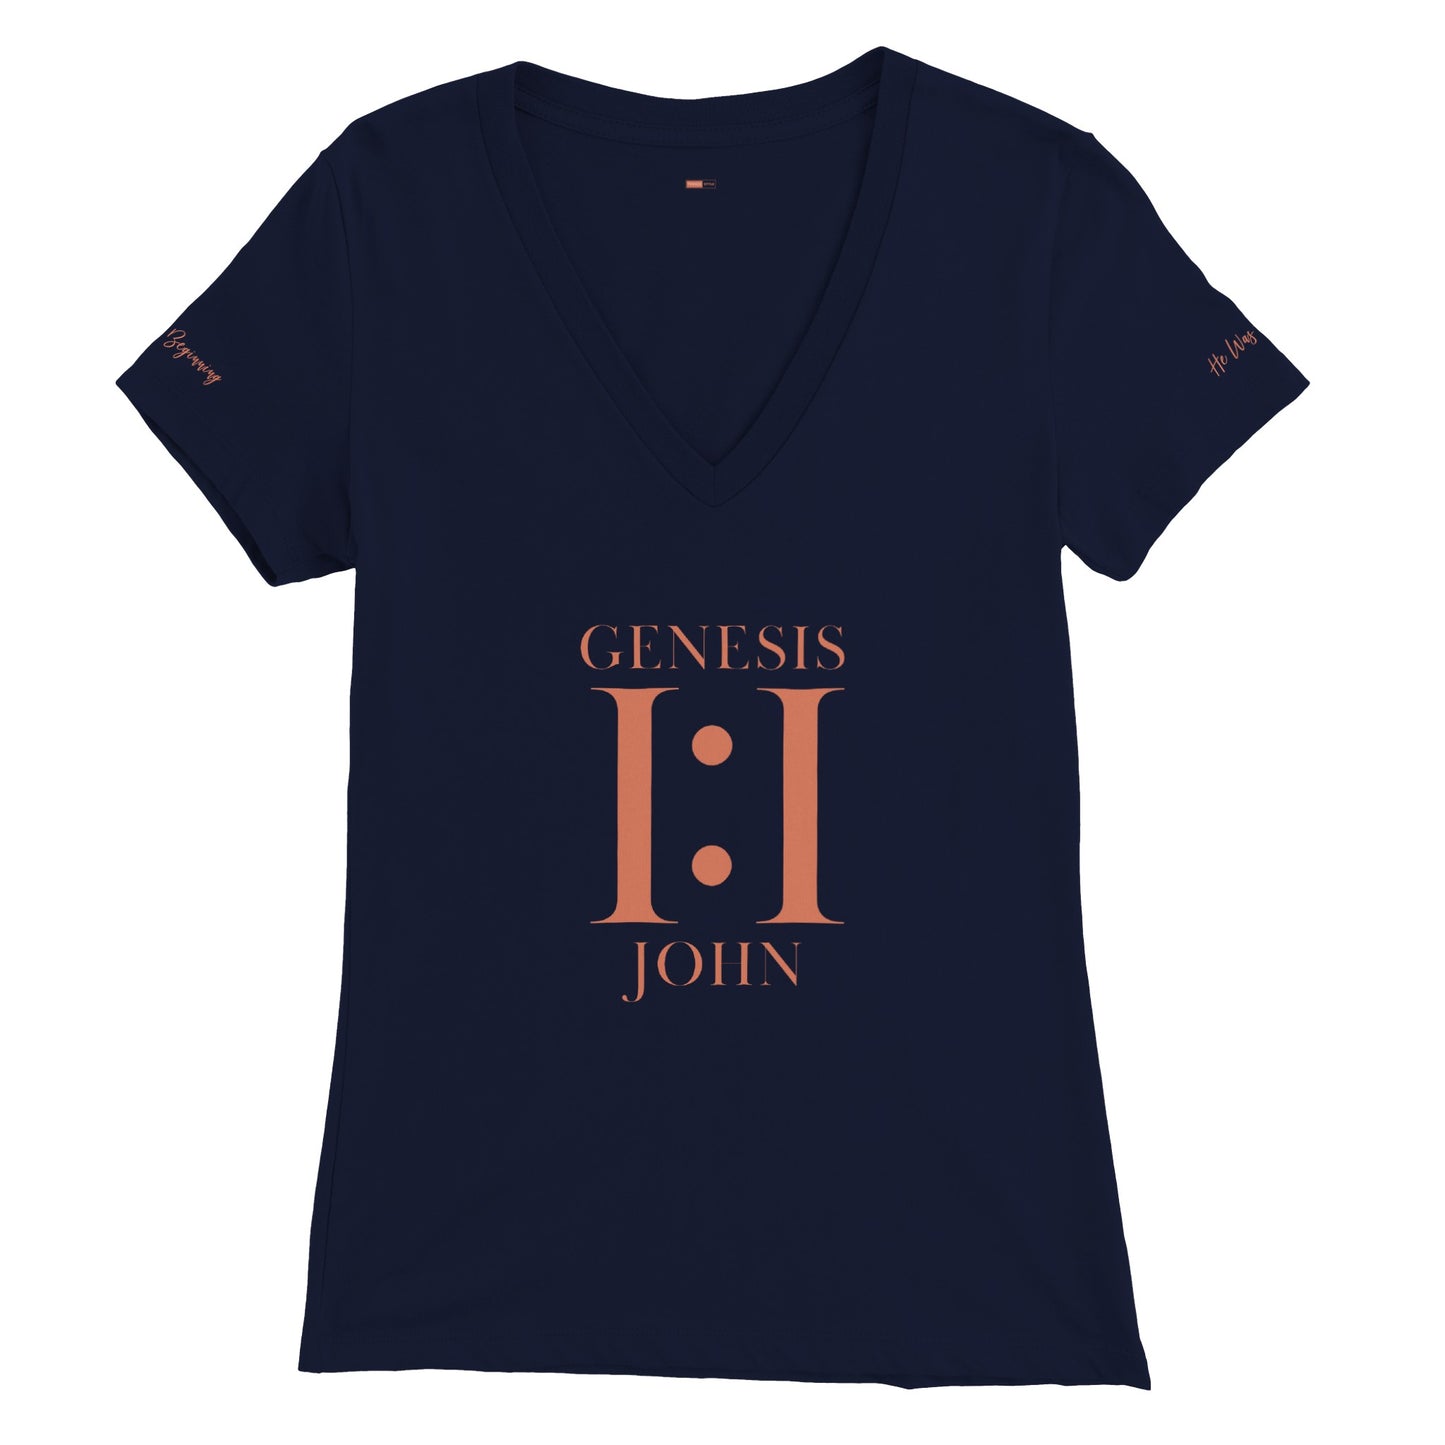 1:1 Women's V-Neck  T-Shirt (Navy)